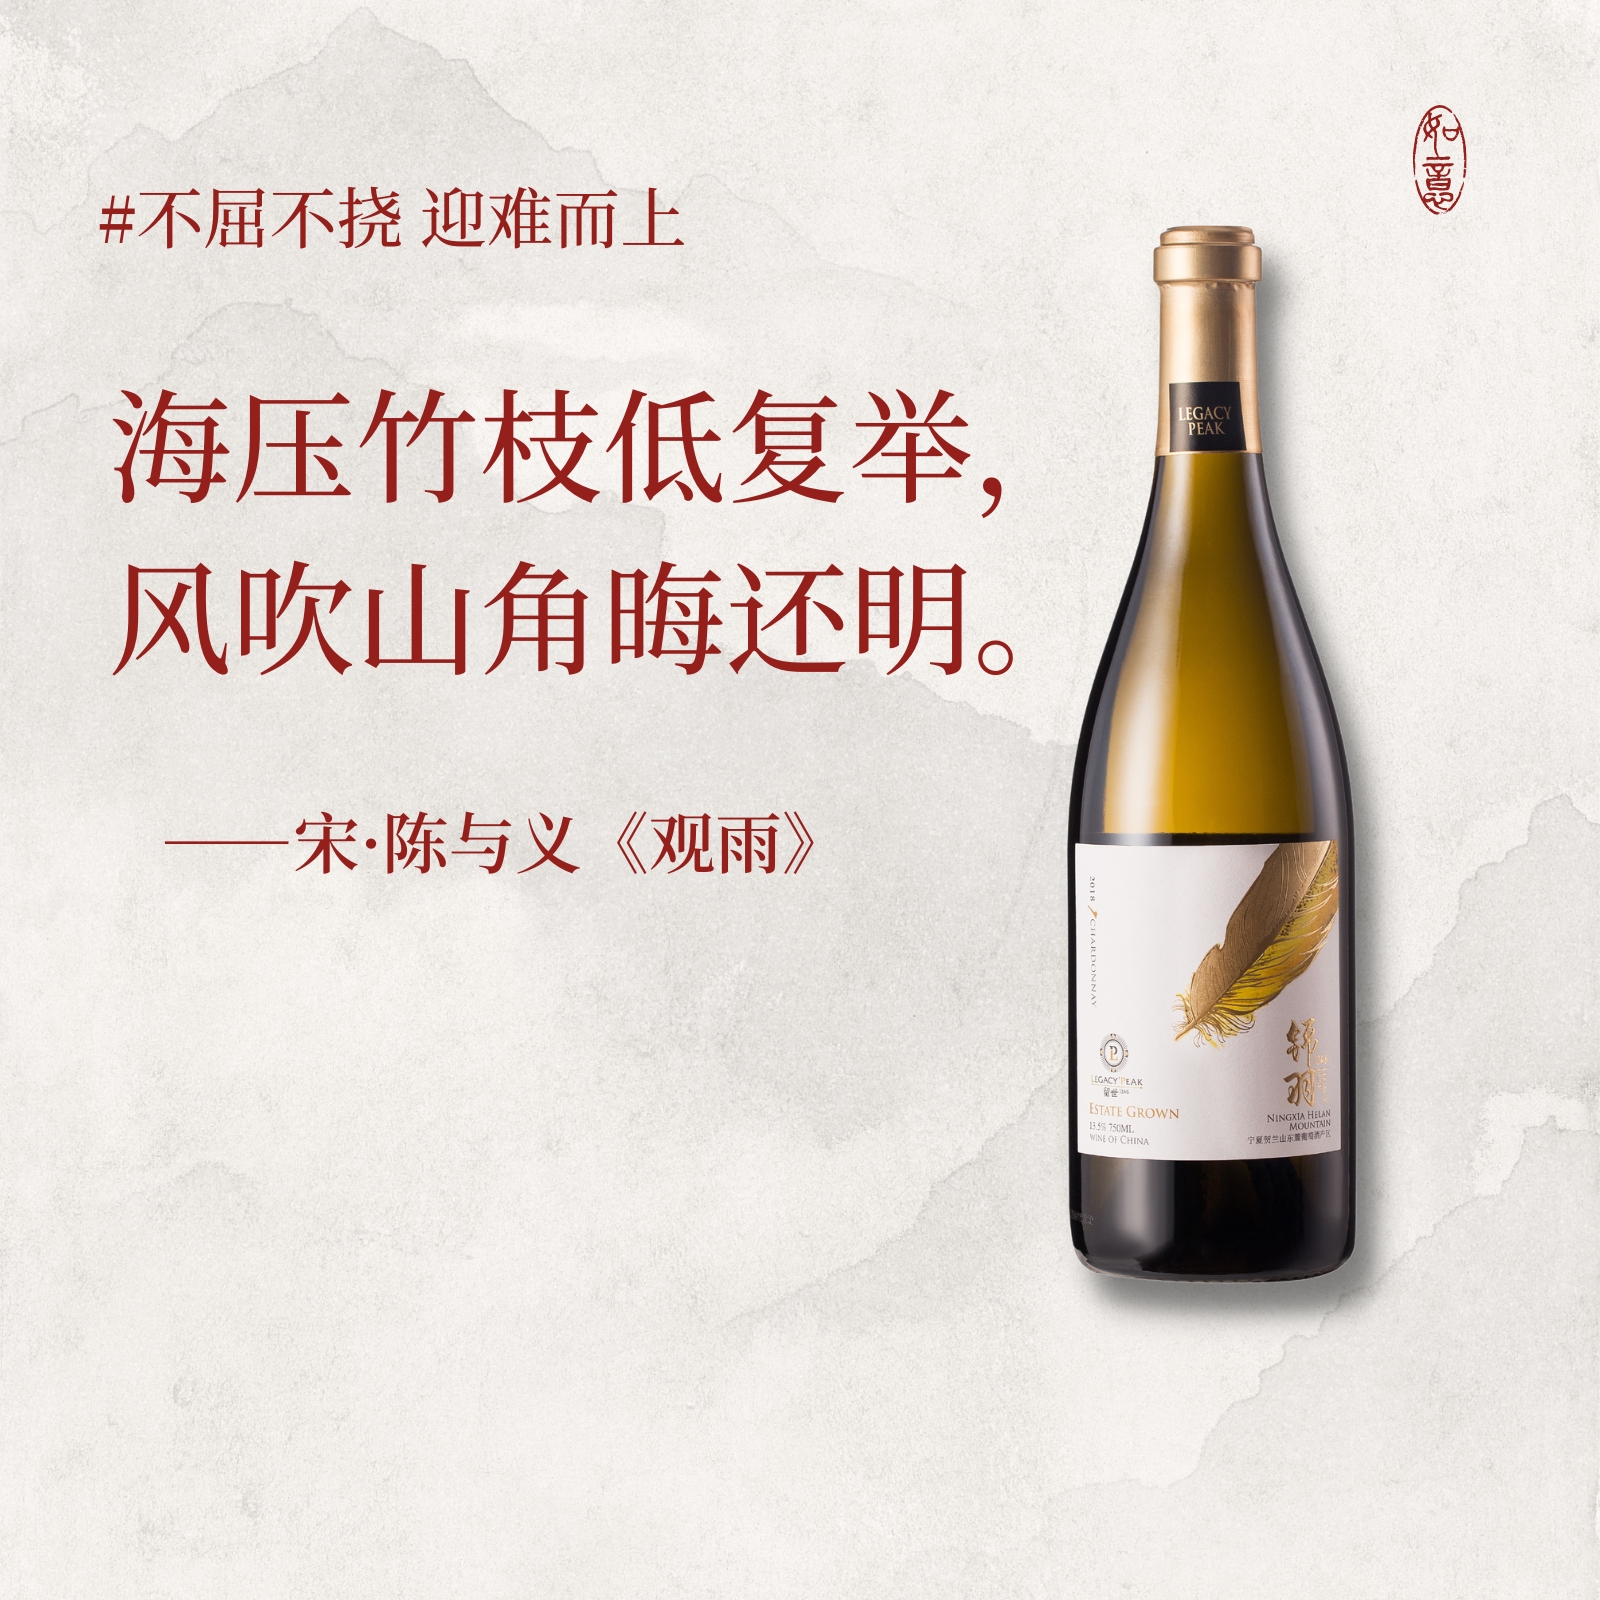 留世酒庄锦羽葡萄酒宁夏列级名庄贺兰红酒霞多丽干白葡萄酒750ml